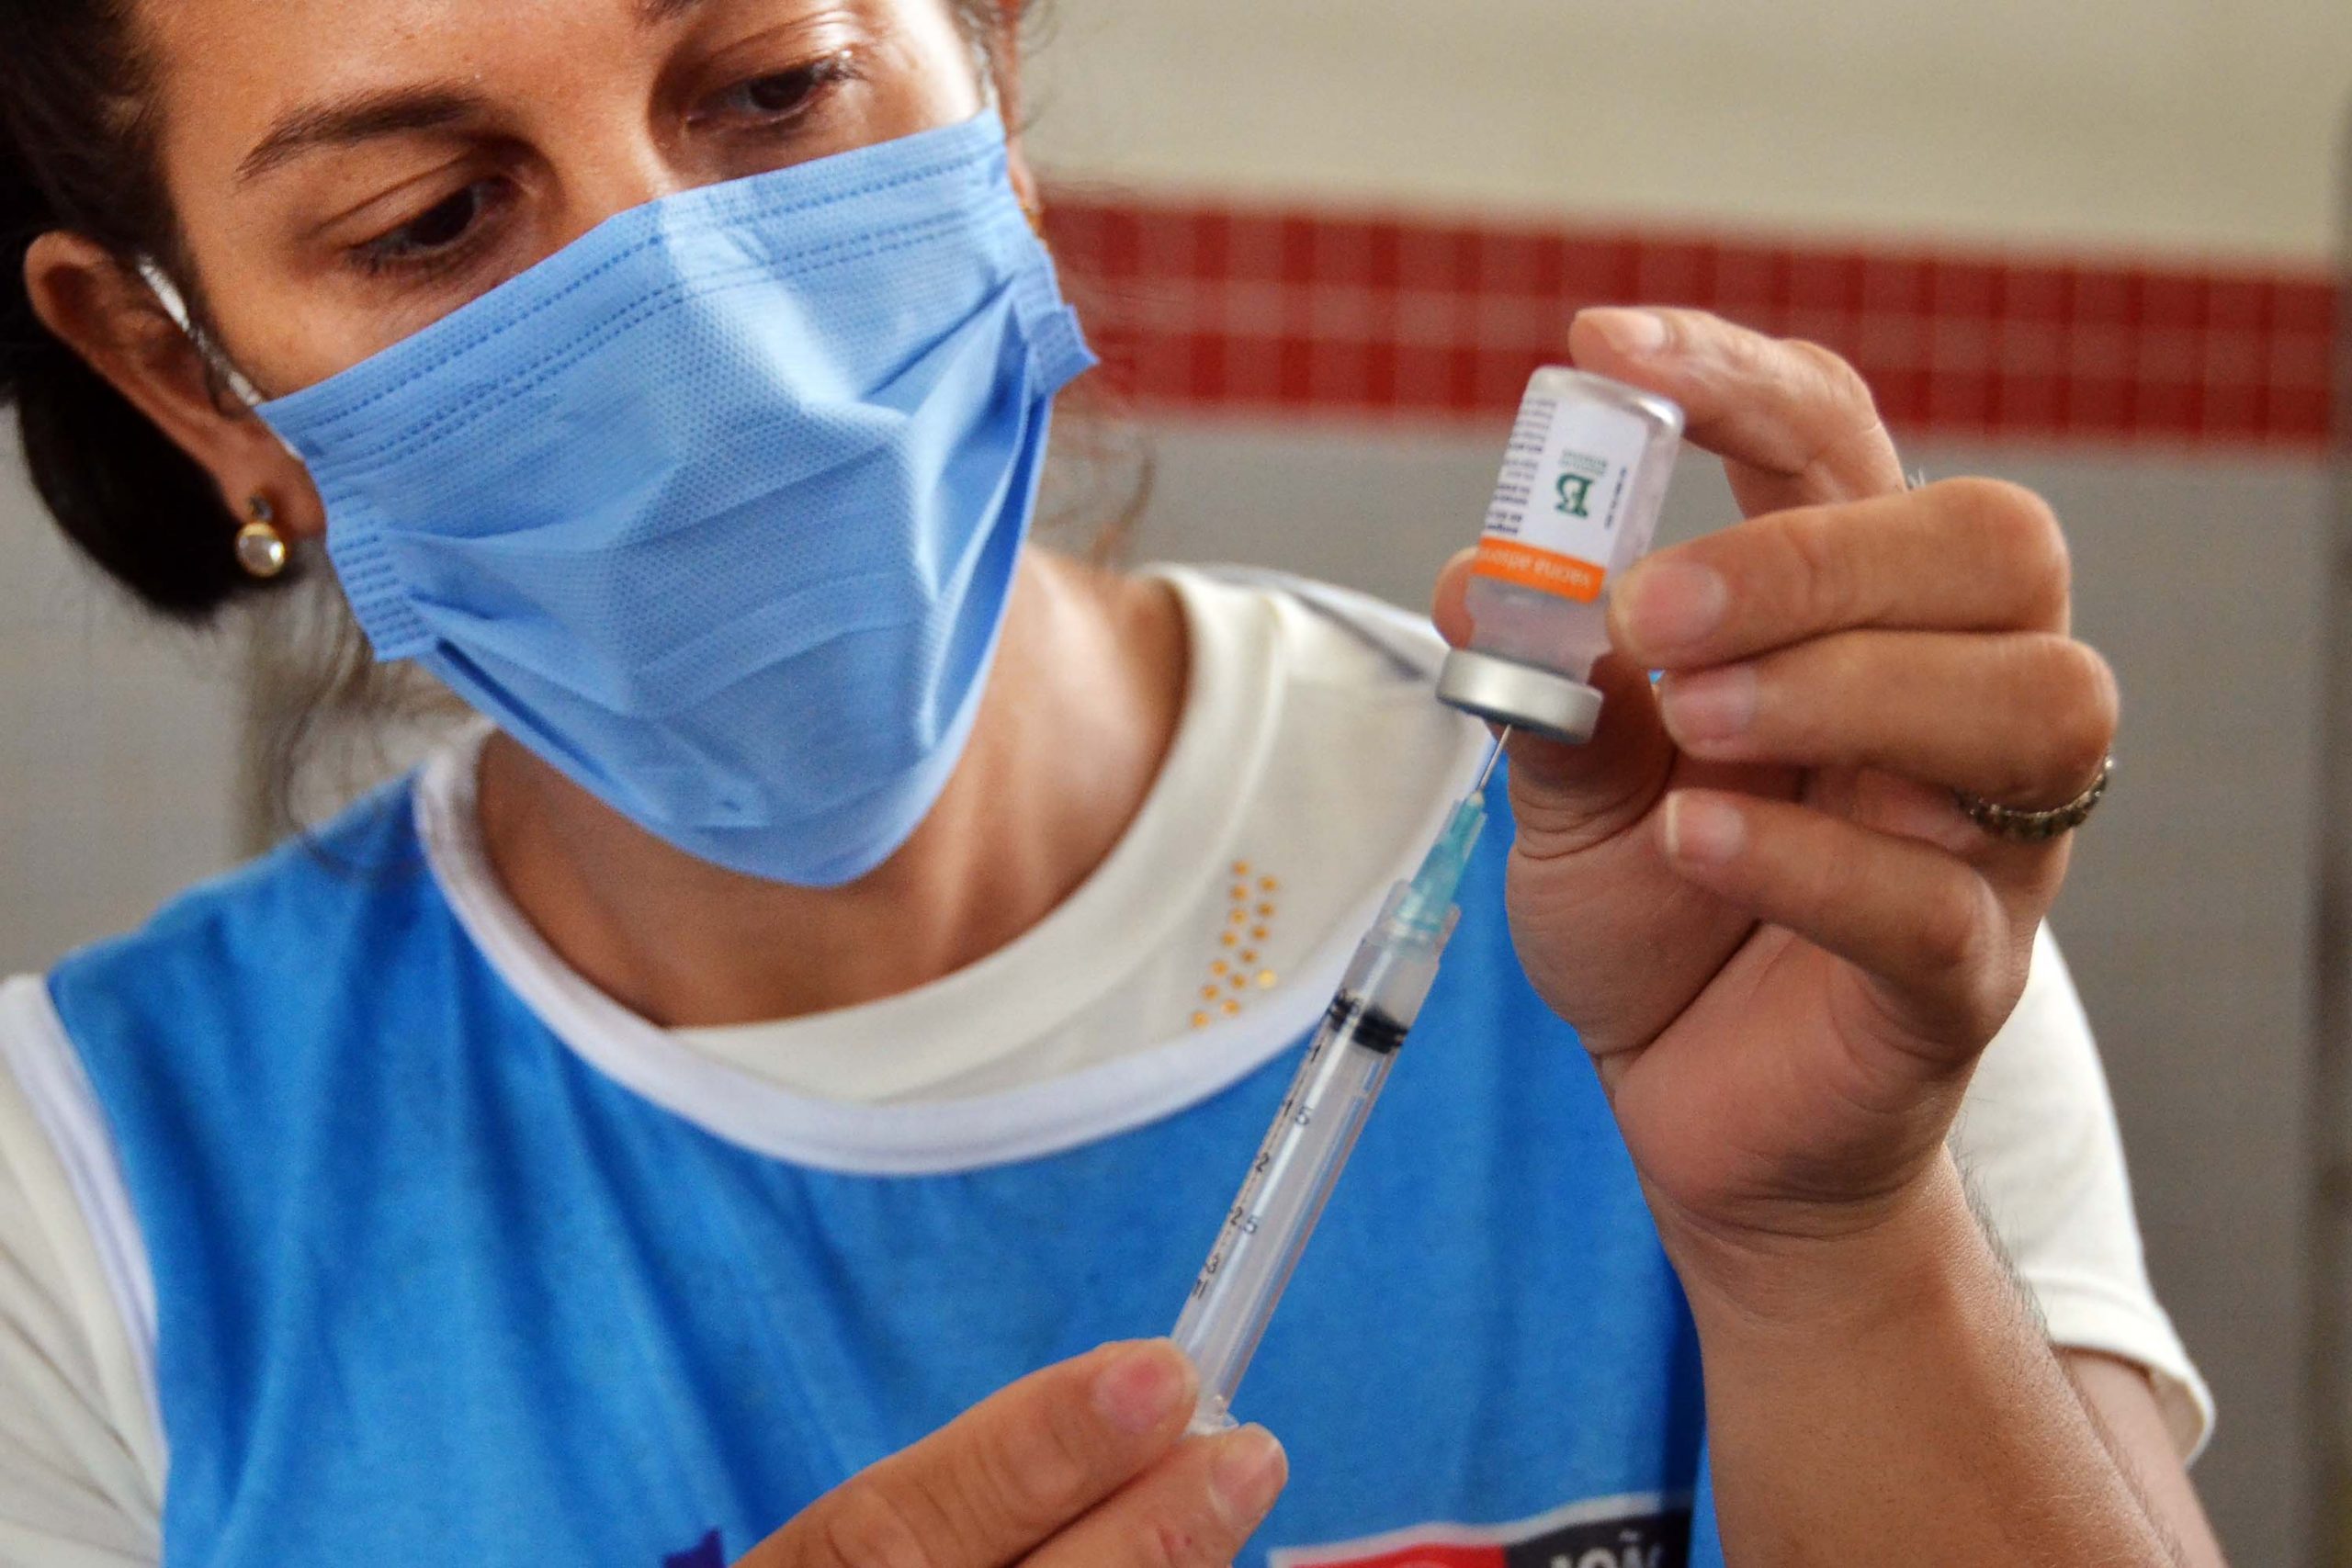 Prefeitura Municipal de Bicas - 11 e 12/05 Vacinação - Segunda Fase de  Pessoas com Comorbidades